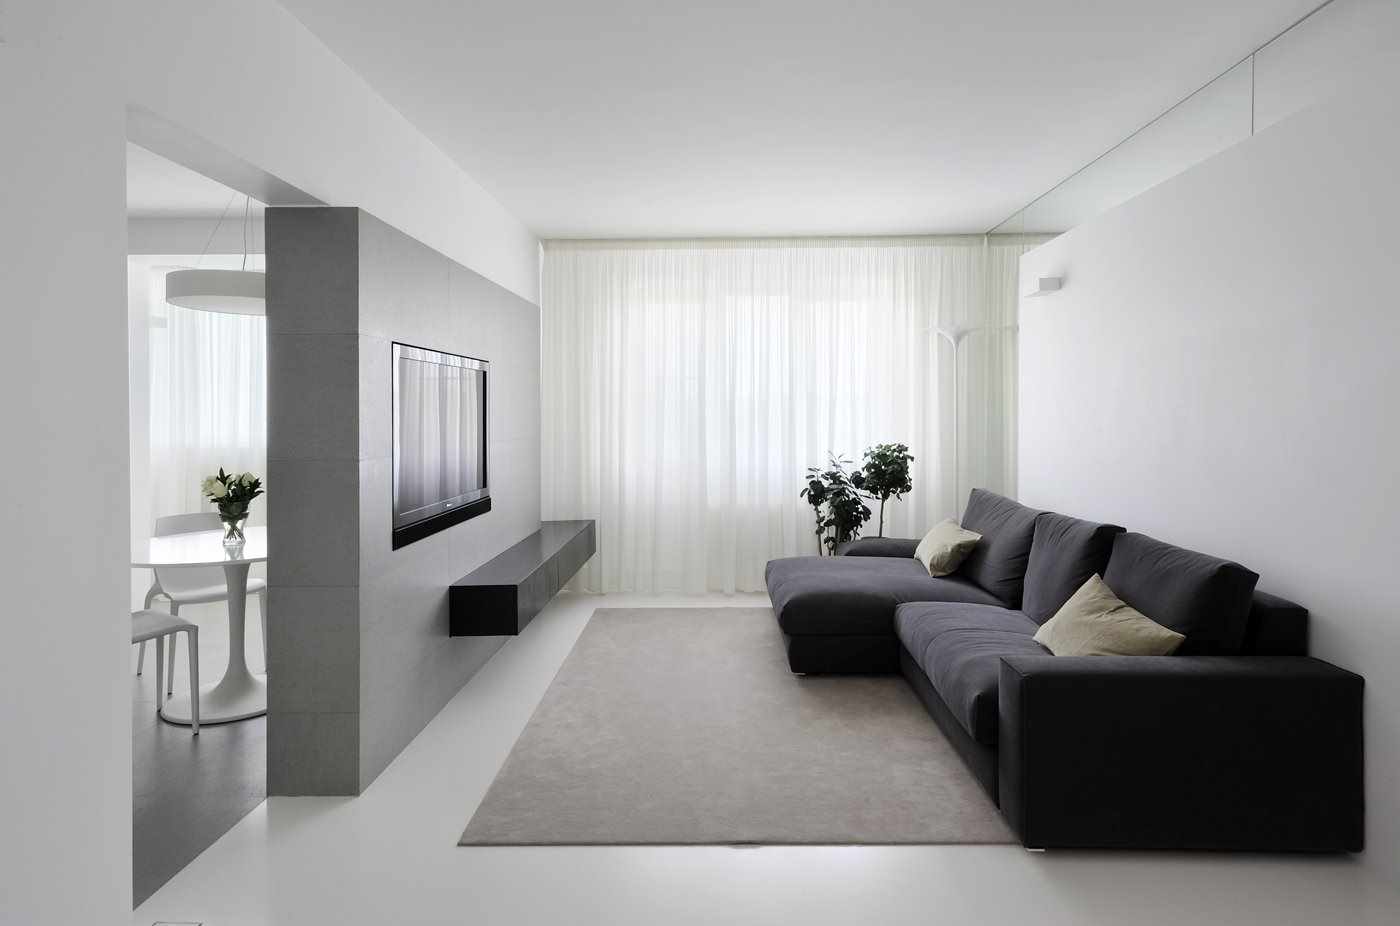 a gondolat, hogy minimalista stílusban használják a nappali világos dekorációját